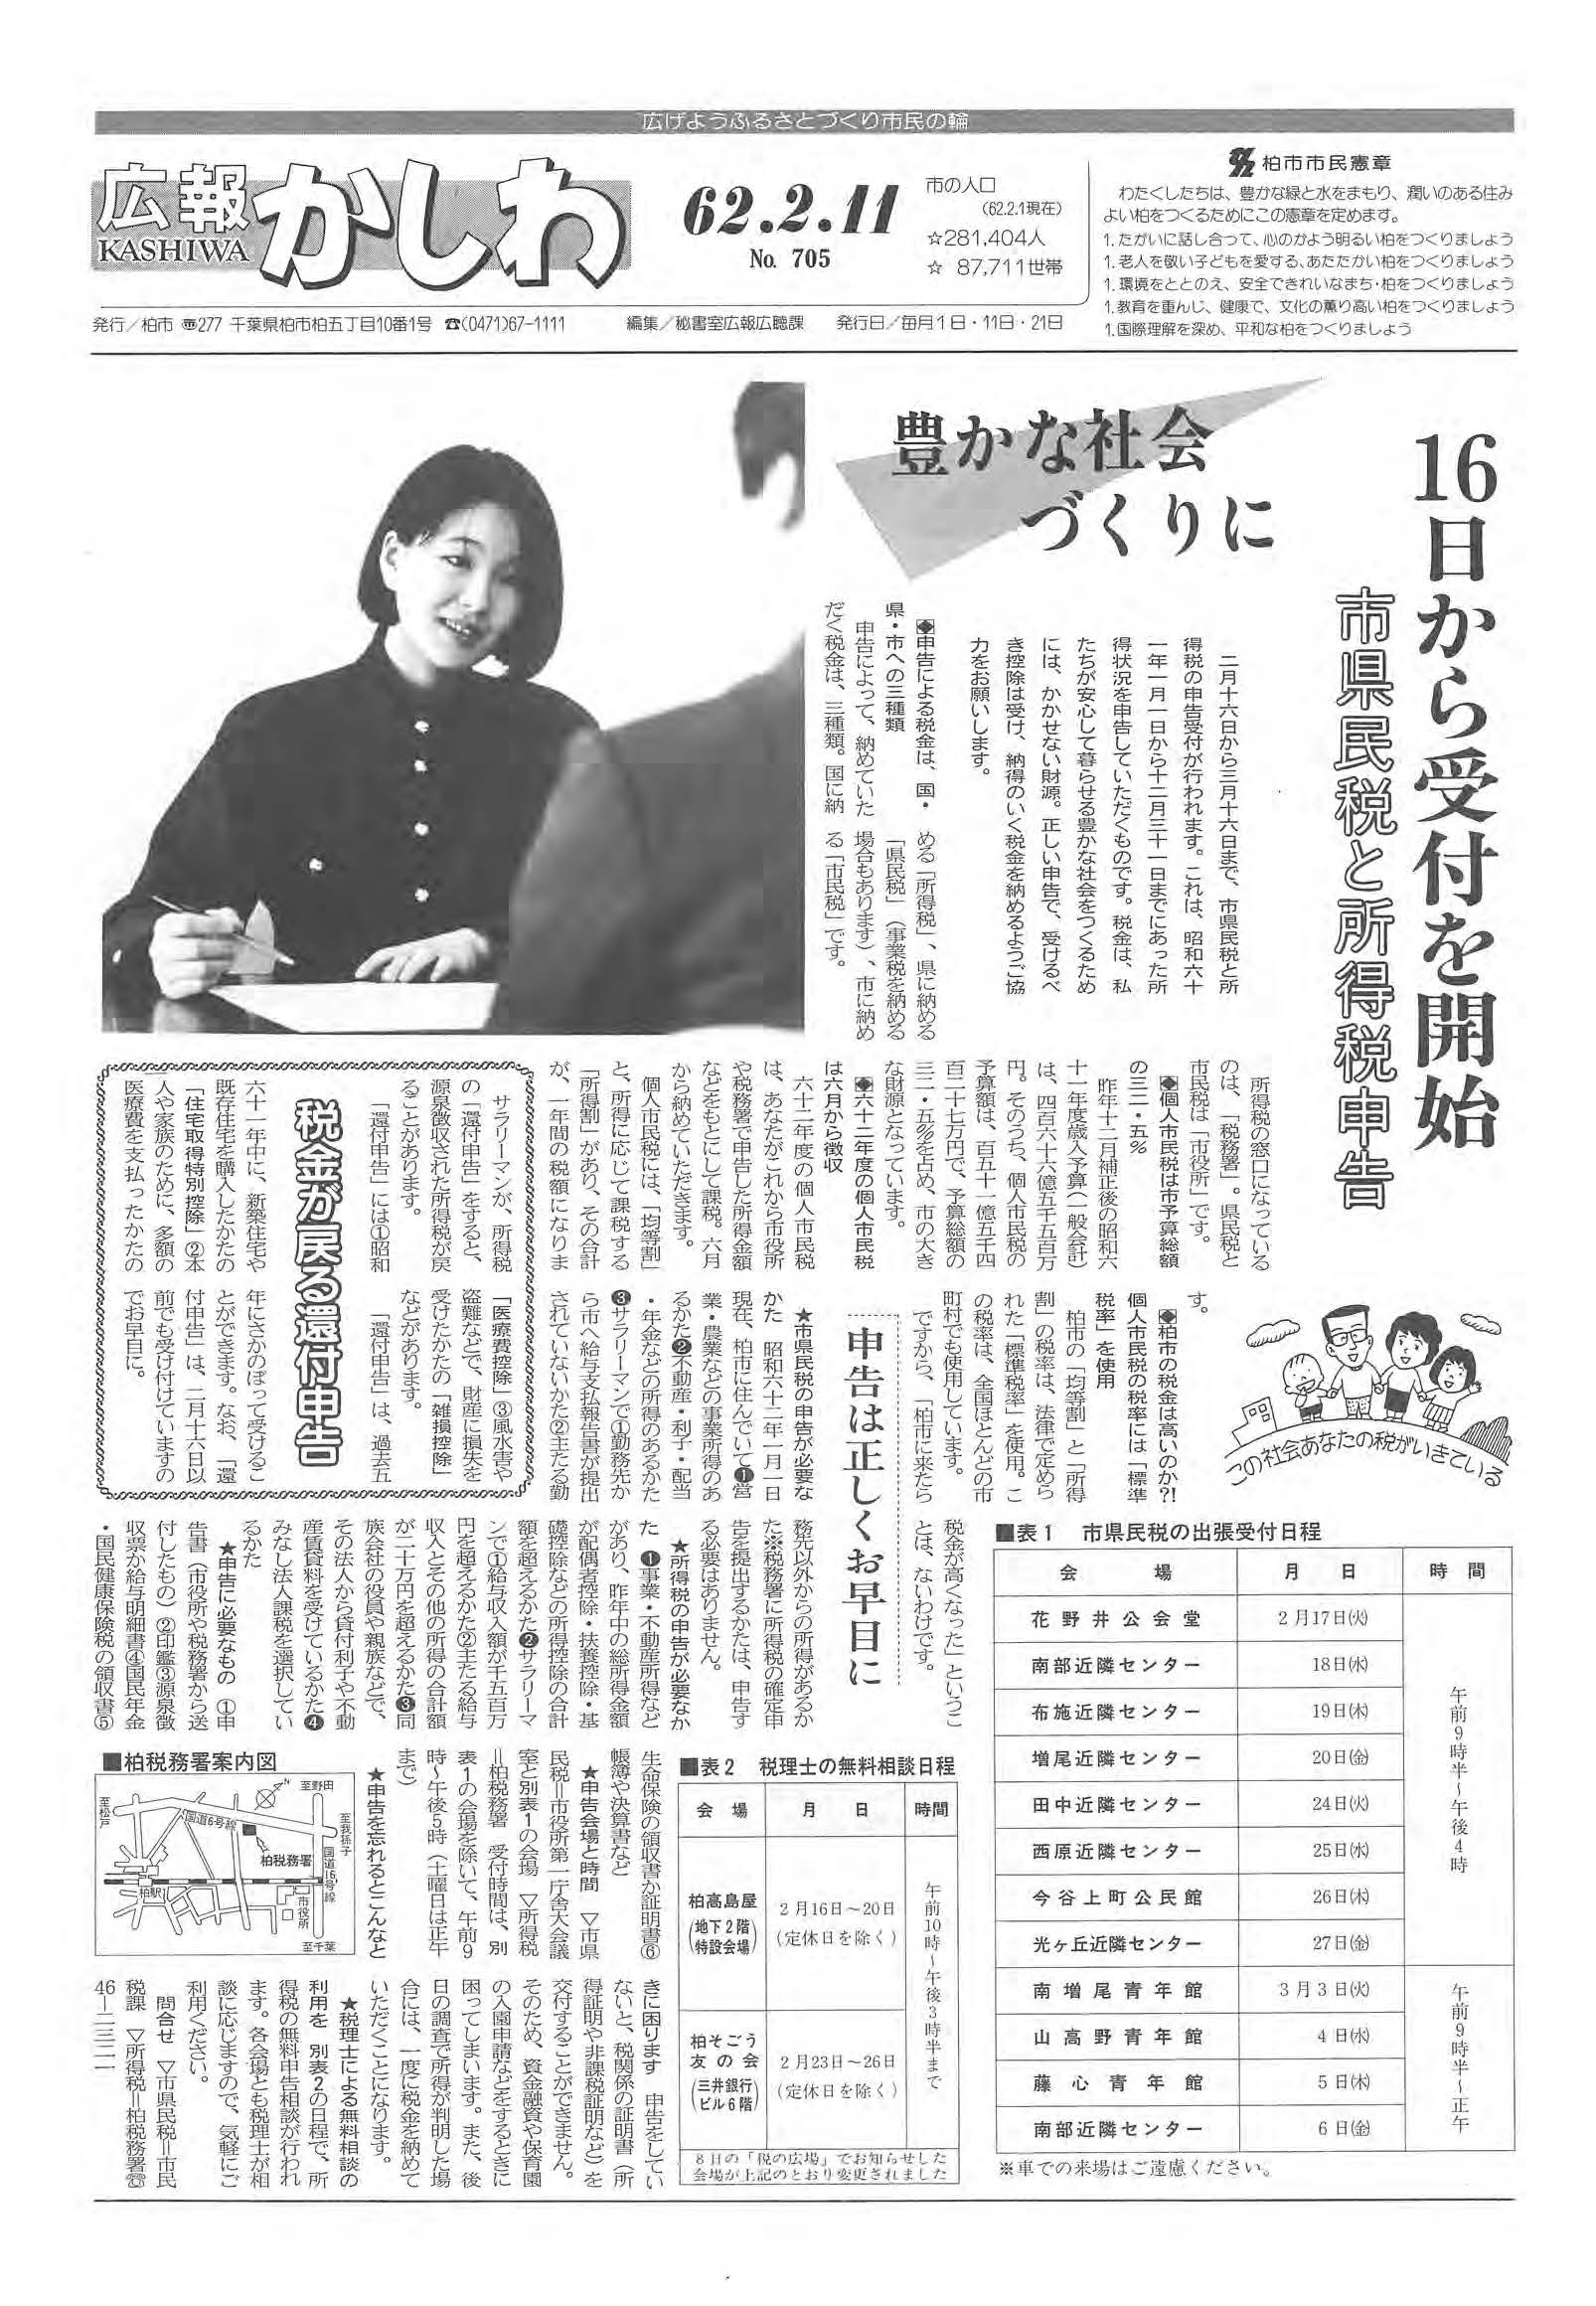 広報かしわ　昭和62年2月11日発行　705号